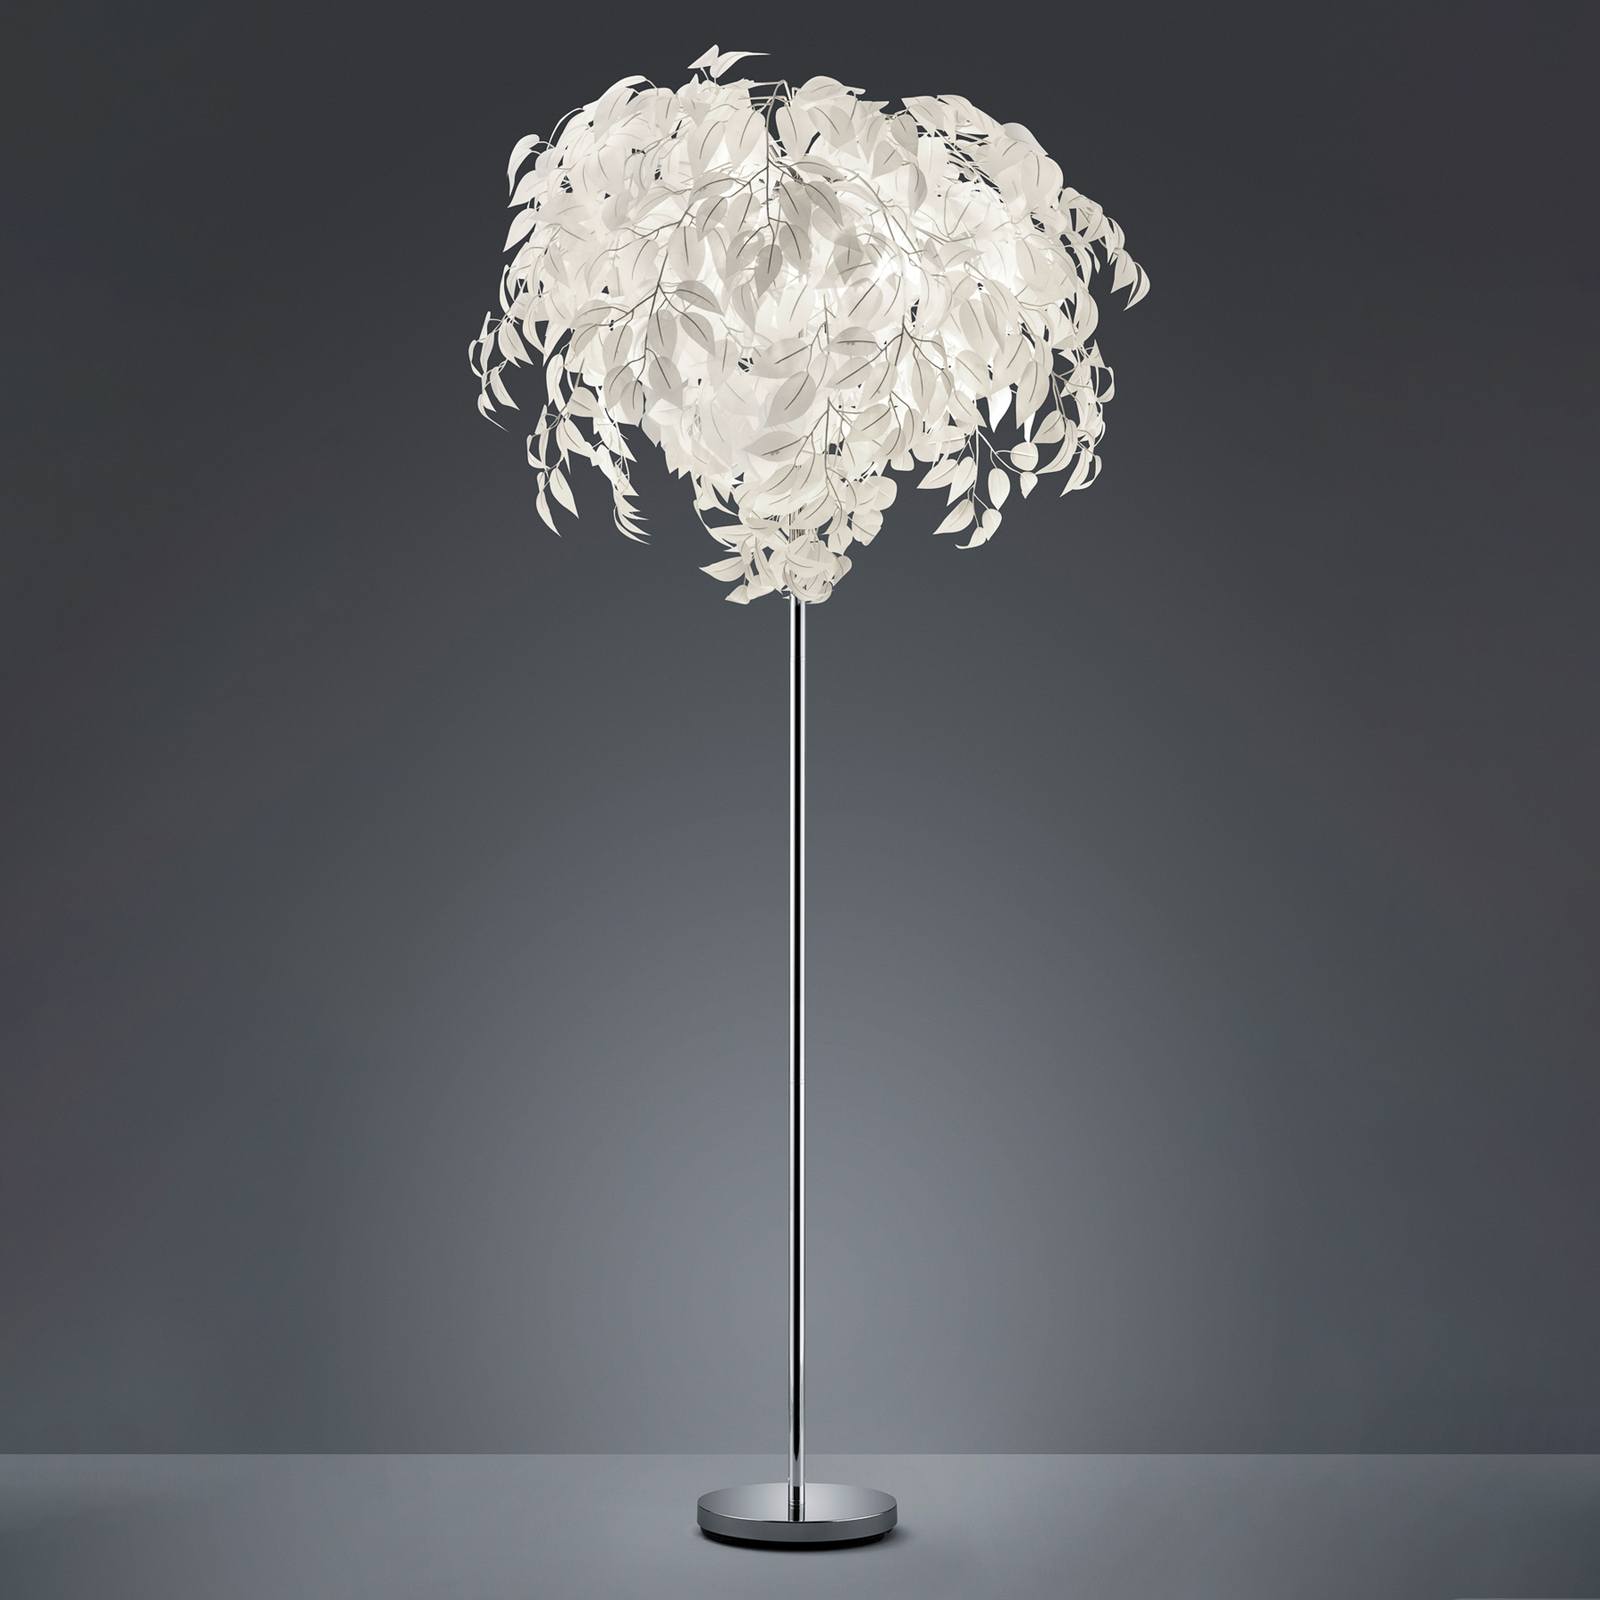 Leavy gulvlampe, høyde 180 cm, krom/hvit, metall/plast